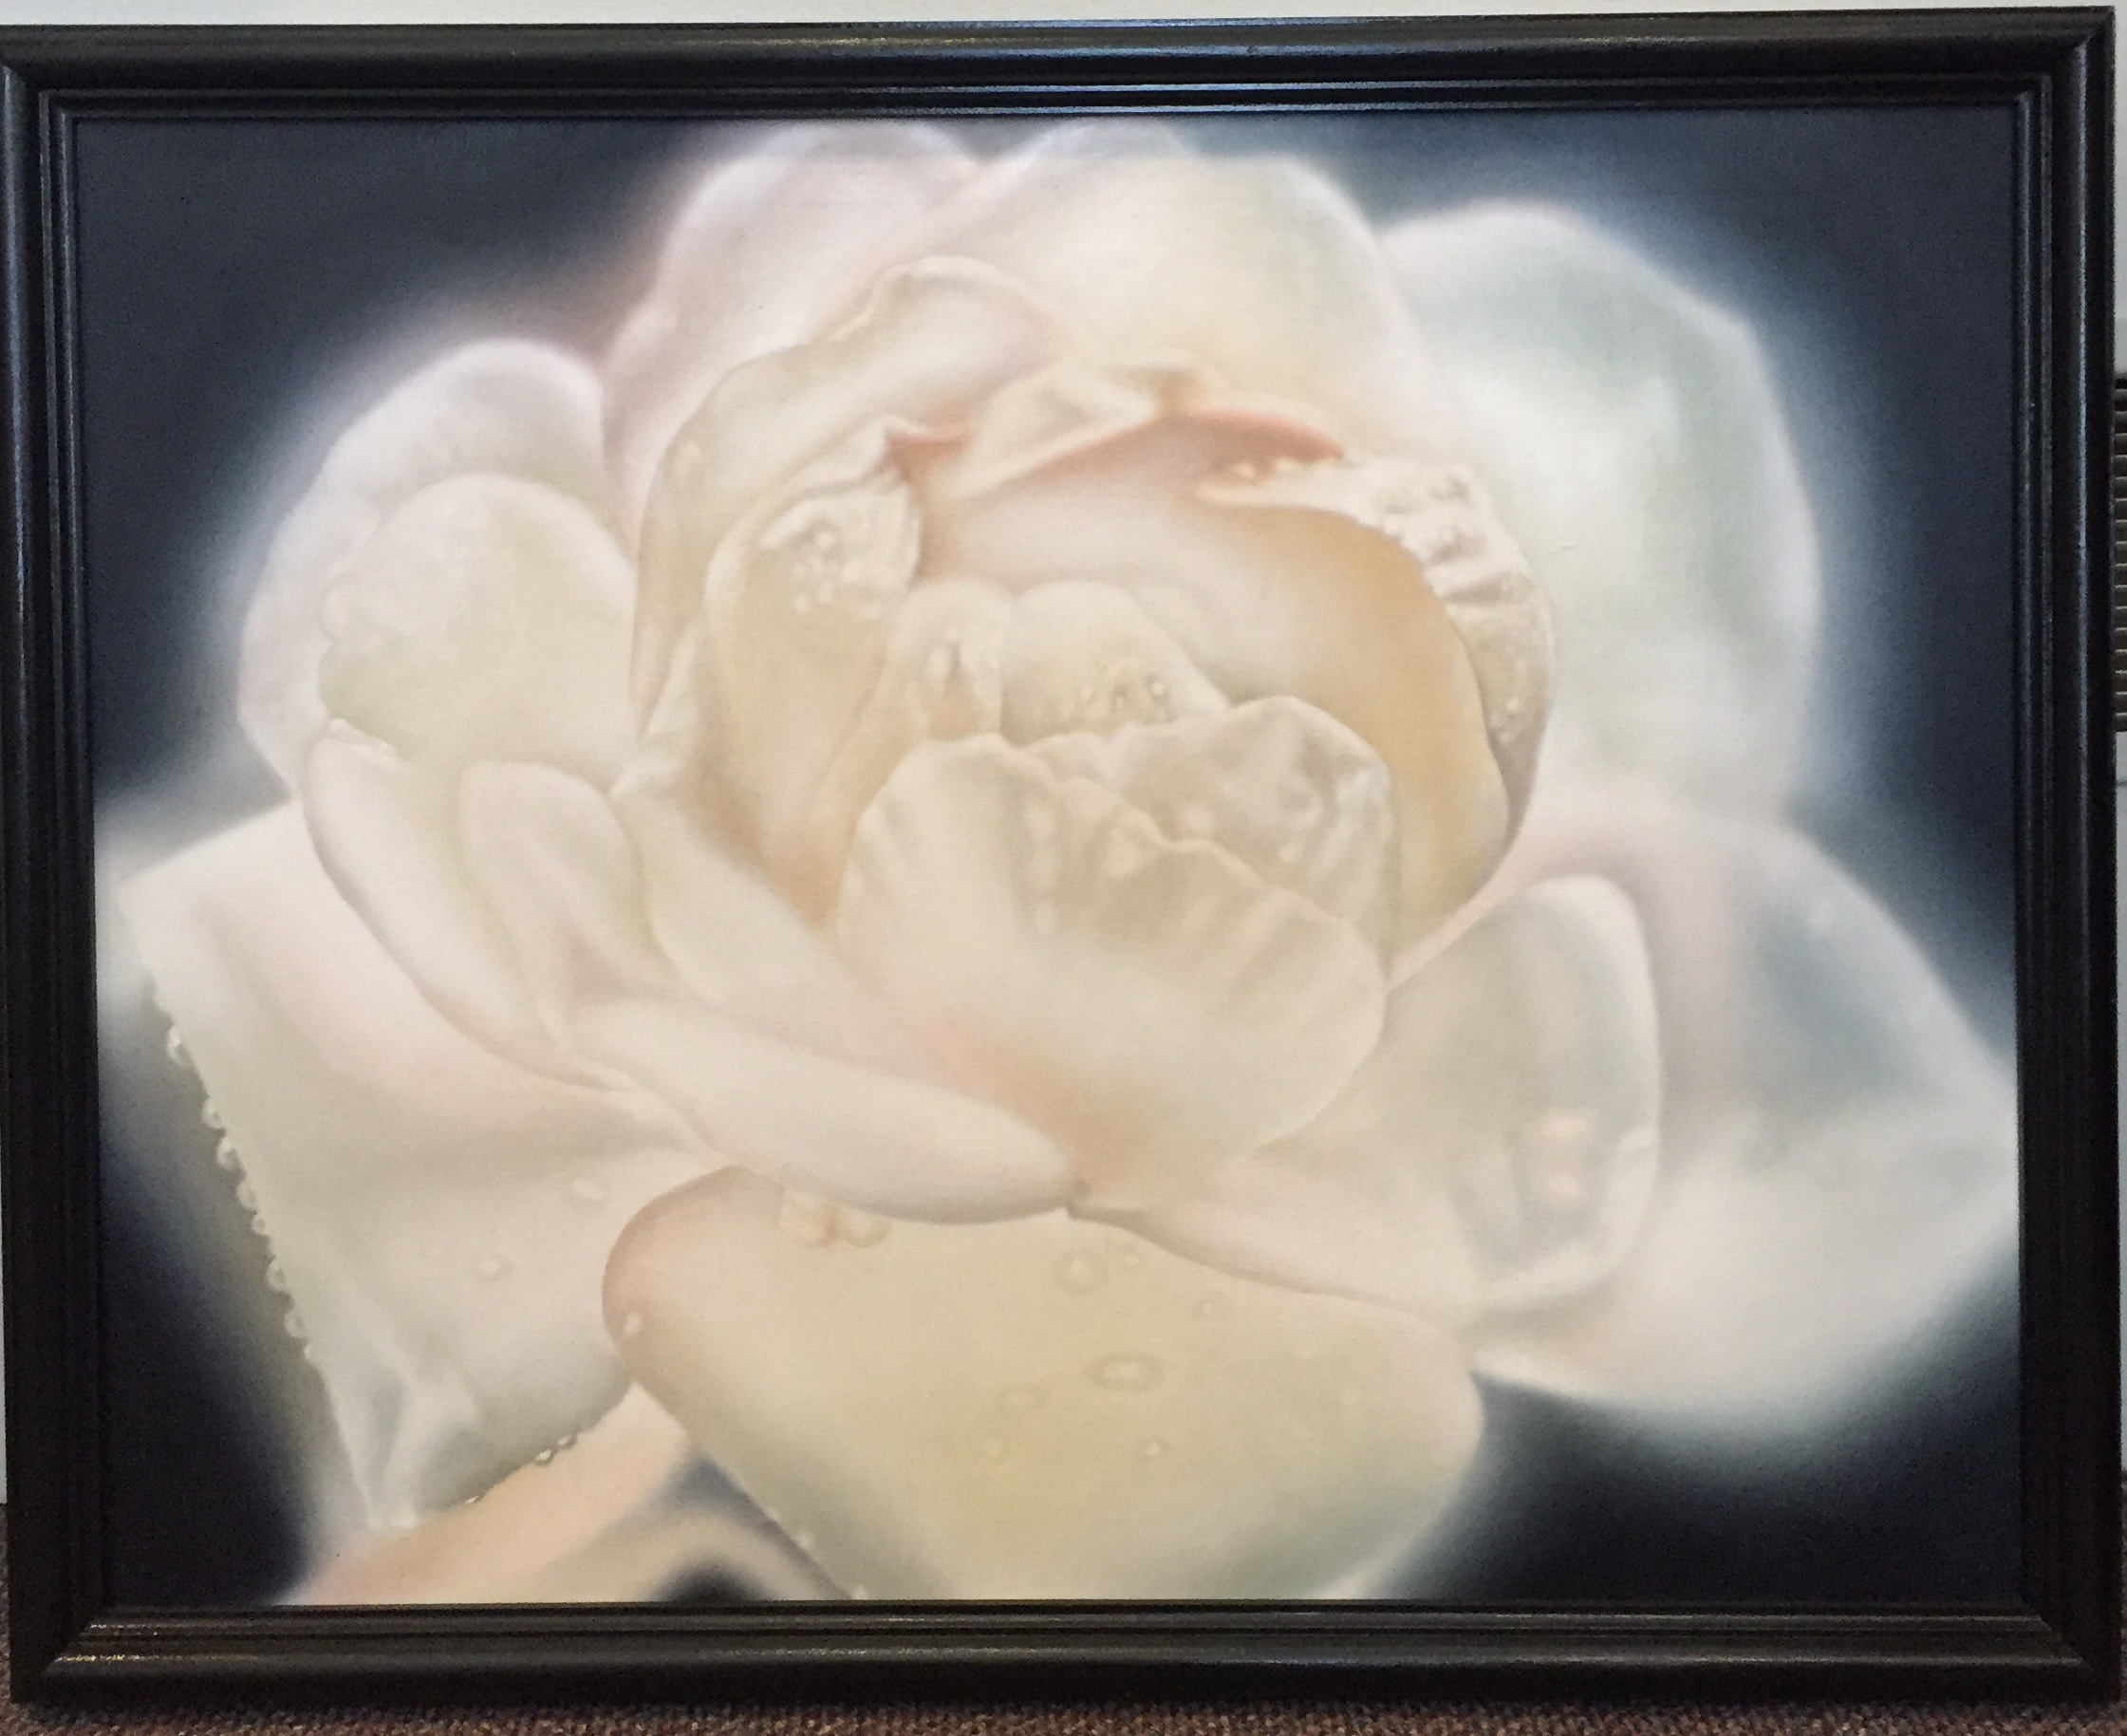 White Rose
Oil
24” x 30”
$375.
